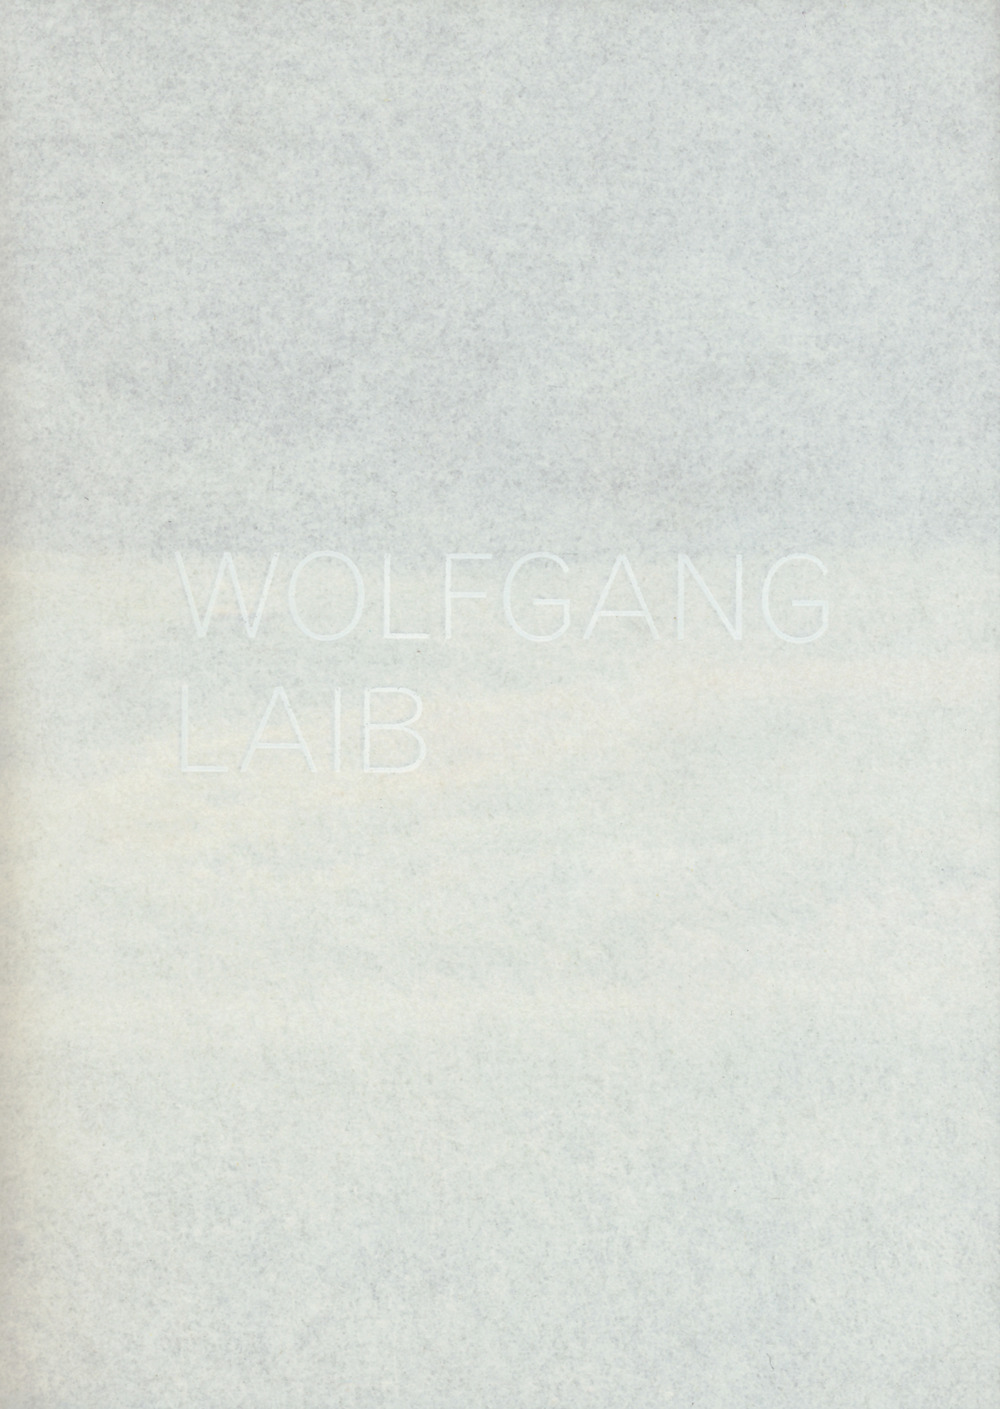 Wolfgang Laib. Catalogo della mostra (Lugano, 3 settembre 2017-7 gennaio 2018). Ediz. italiana e inglese